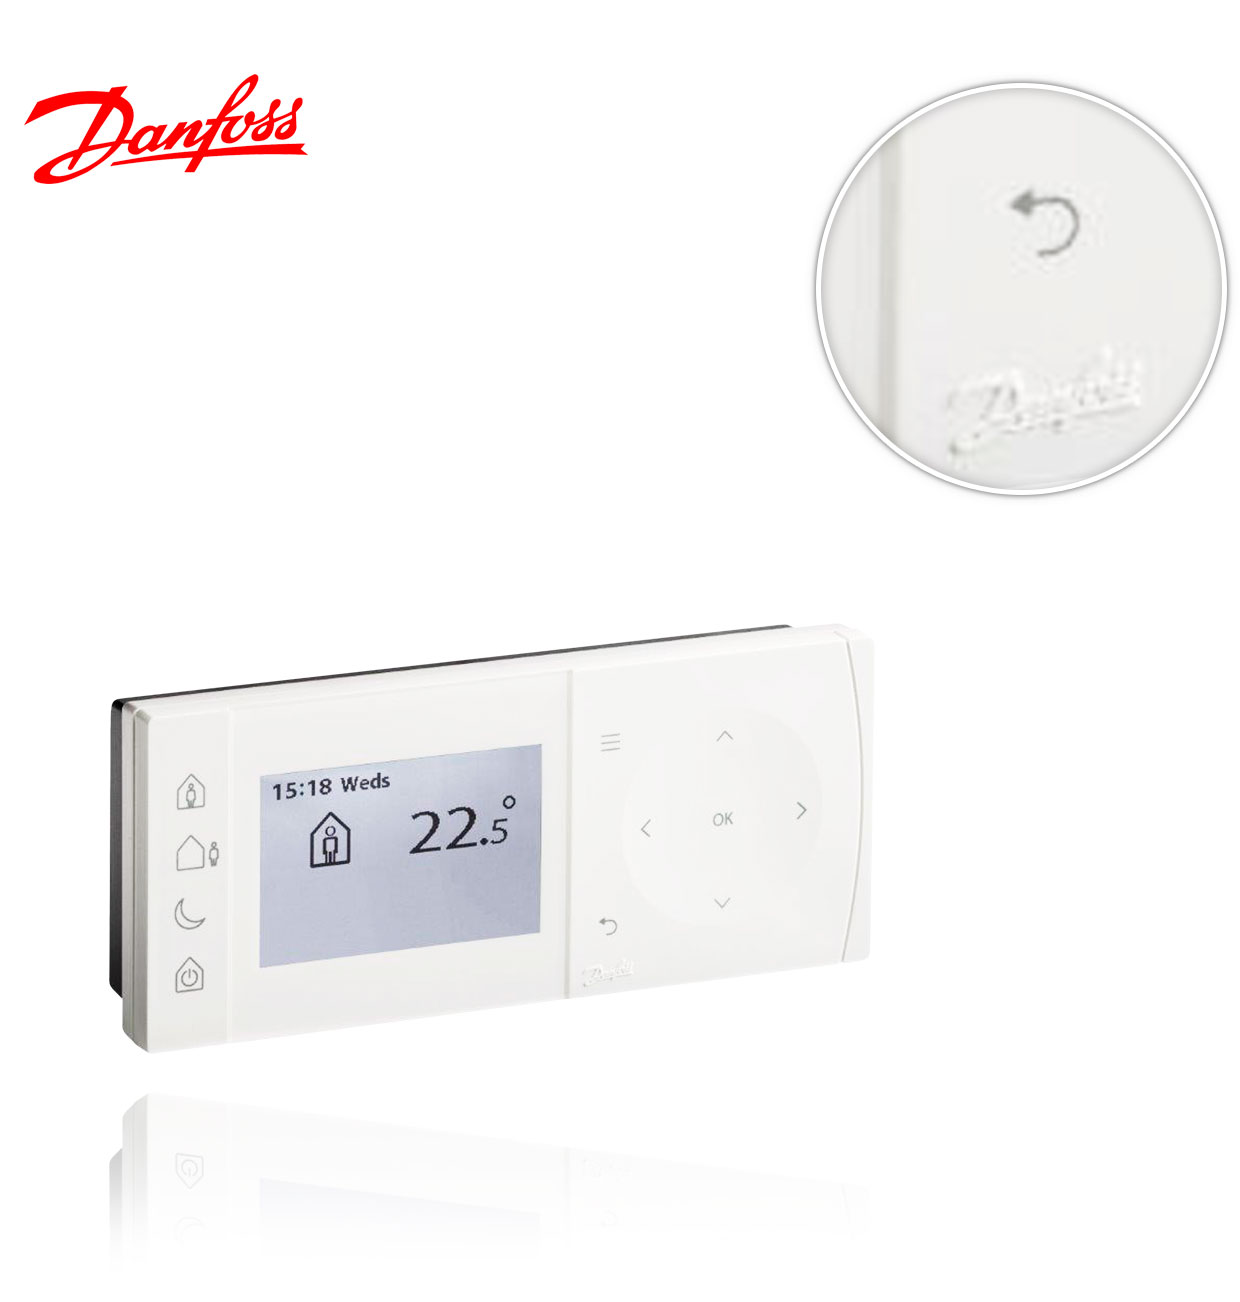 Danfoss Randall tpone-M 087N785200 programmable ERP classe 4 ECS Thermostat nouveau 